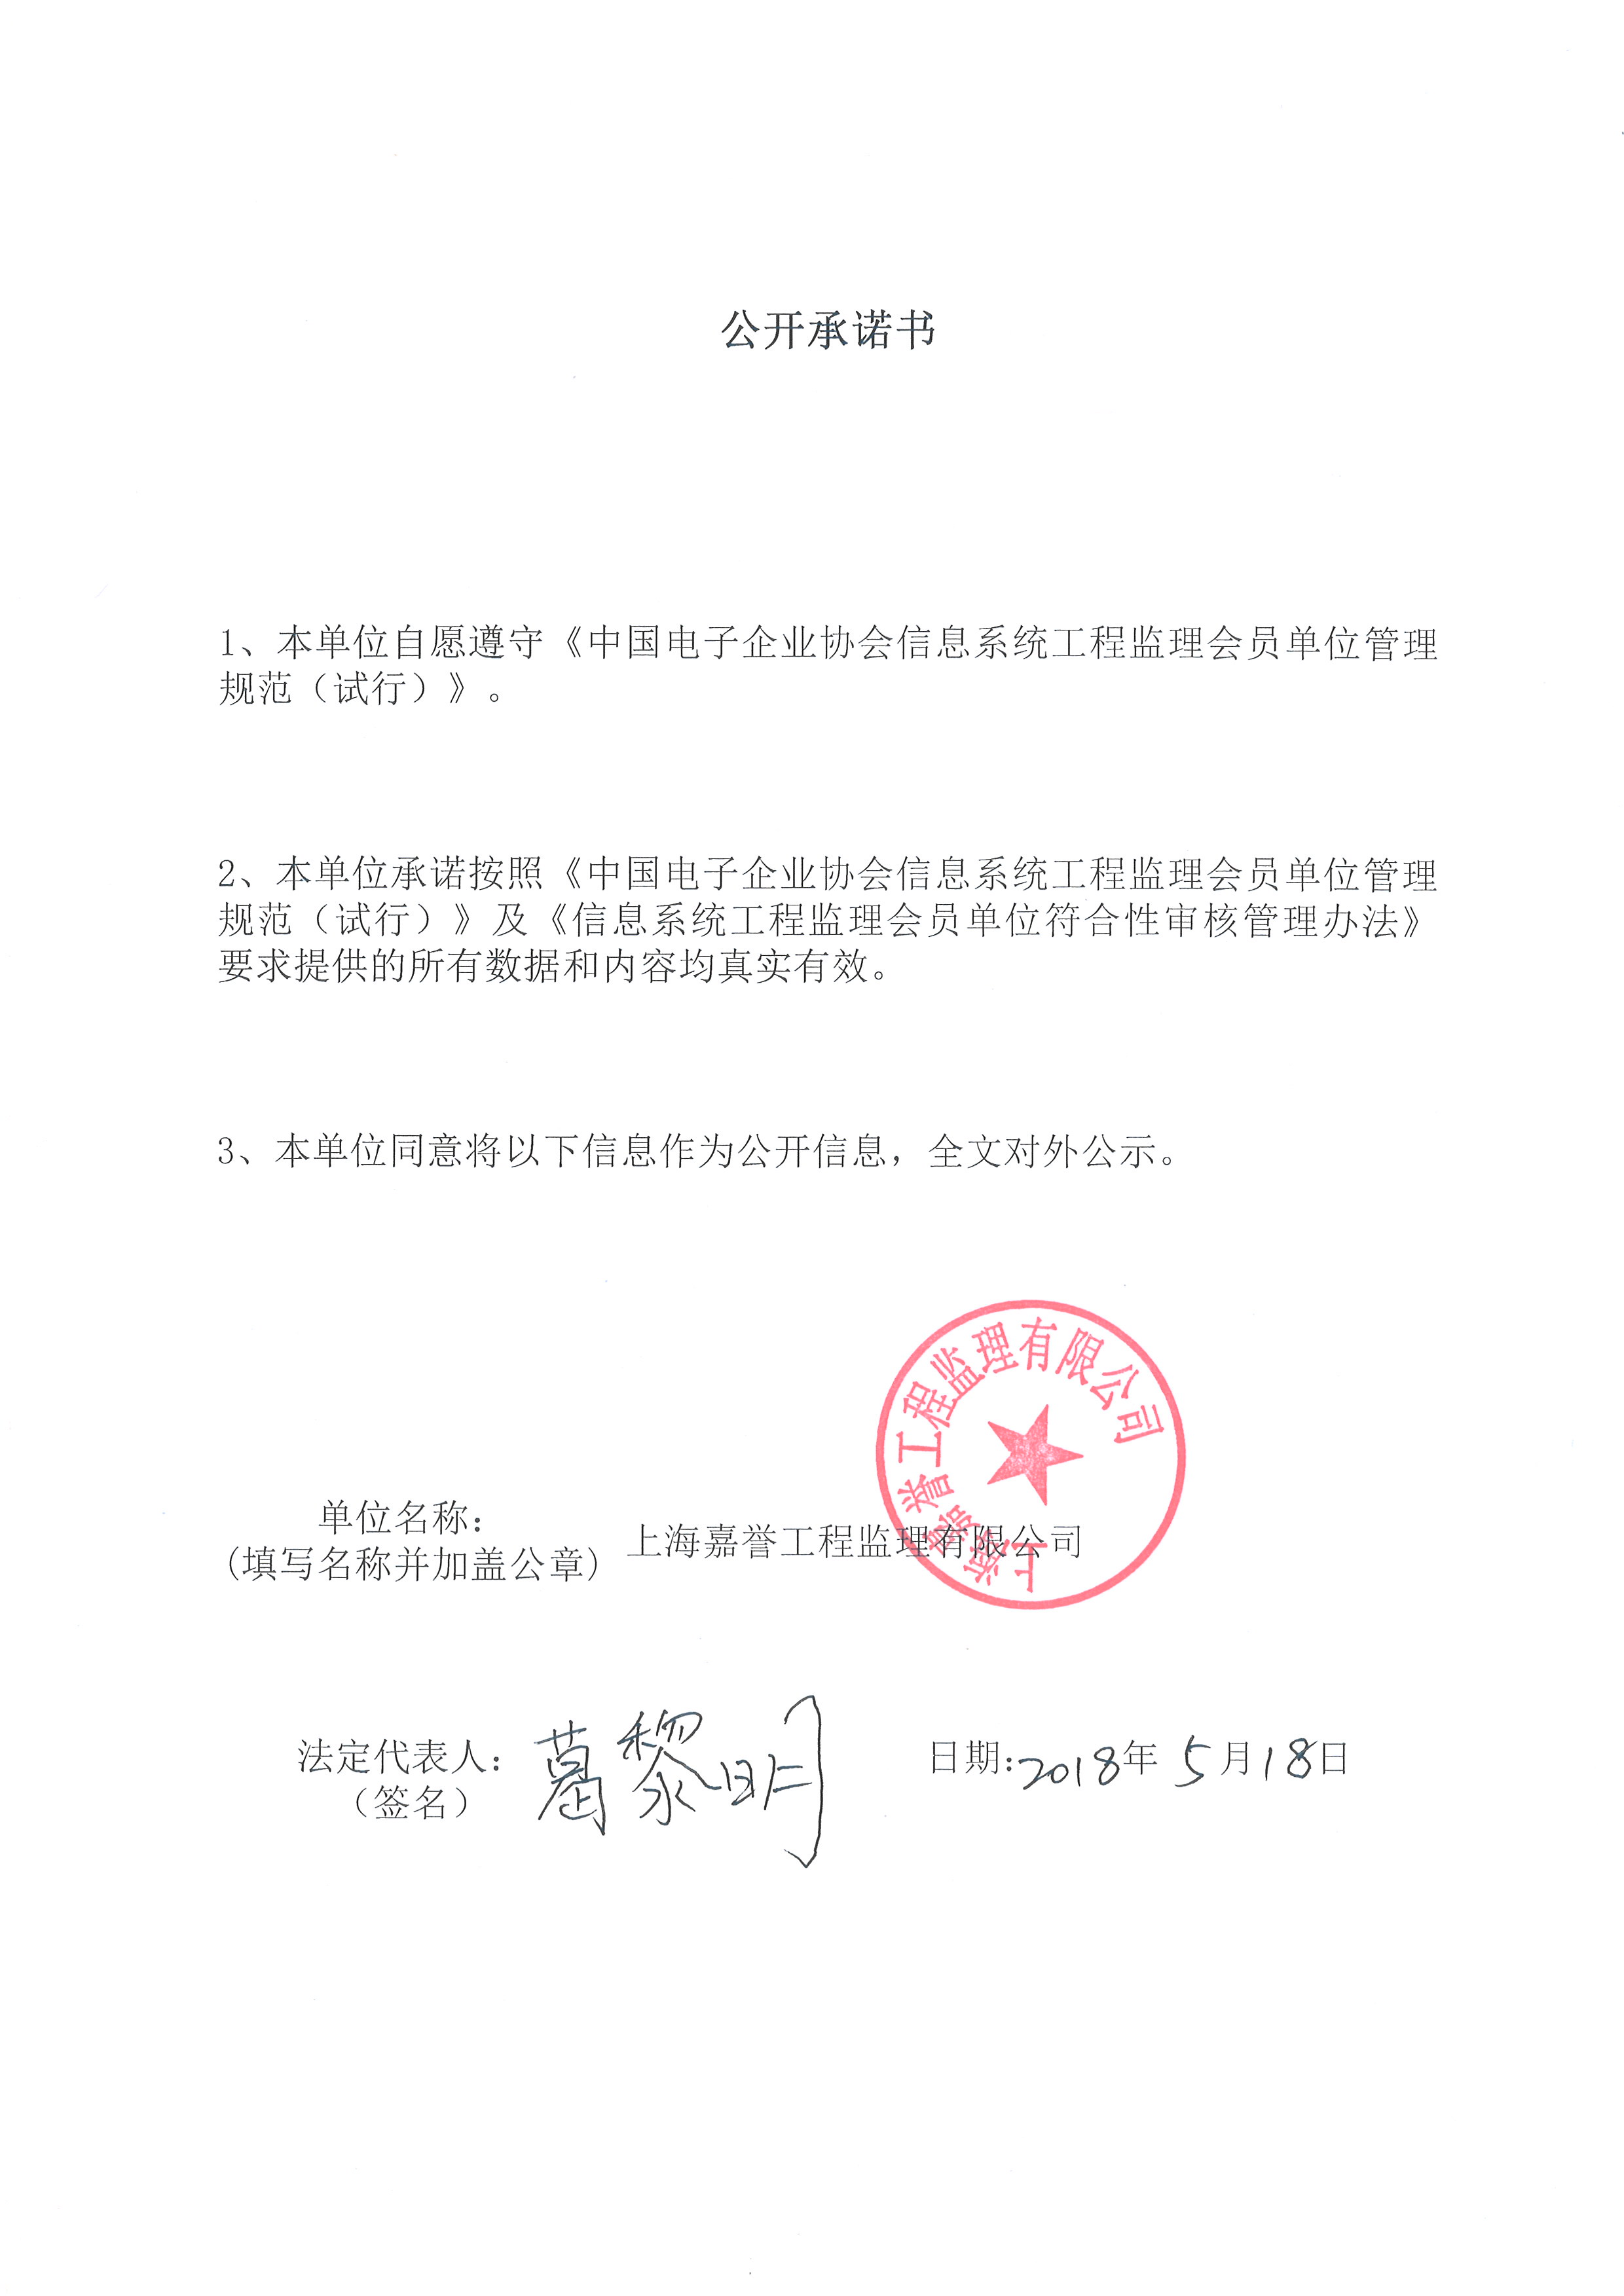 上海嘉誉工程监理有限公司信息系统工程监理资质证书